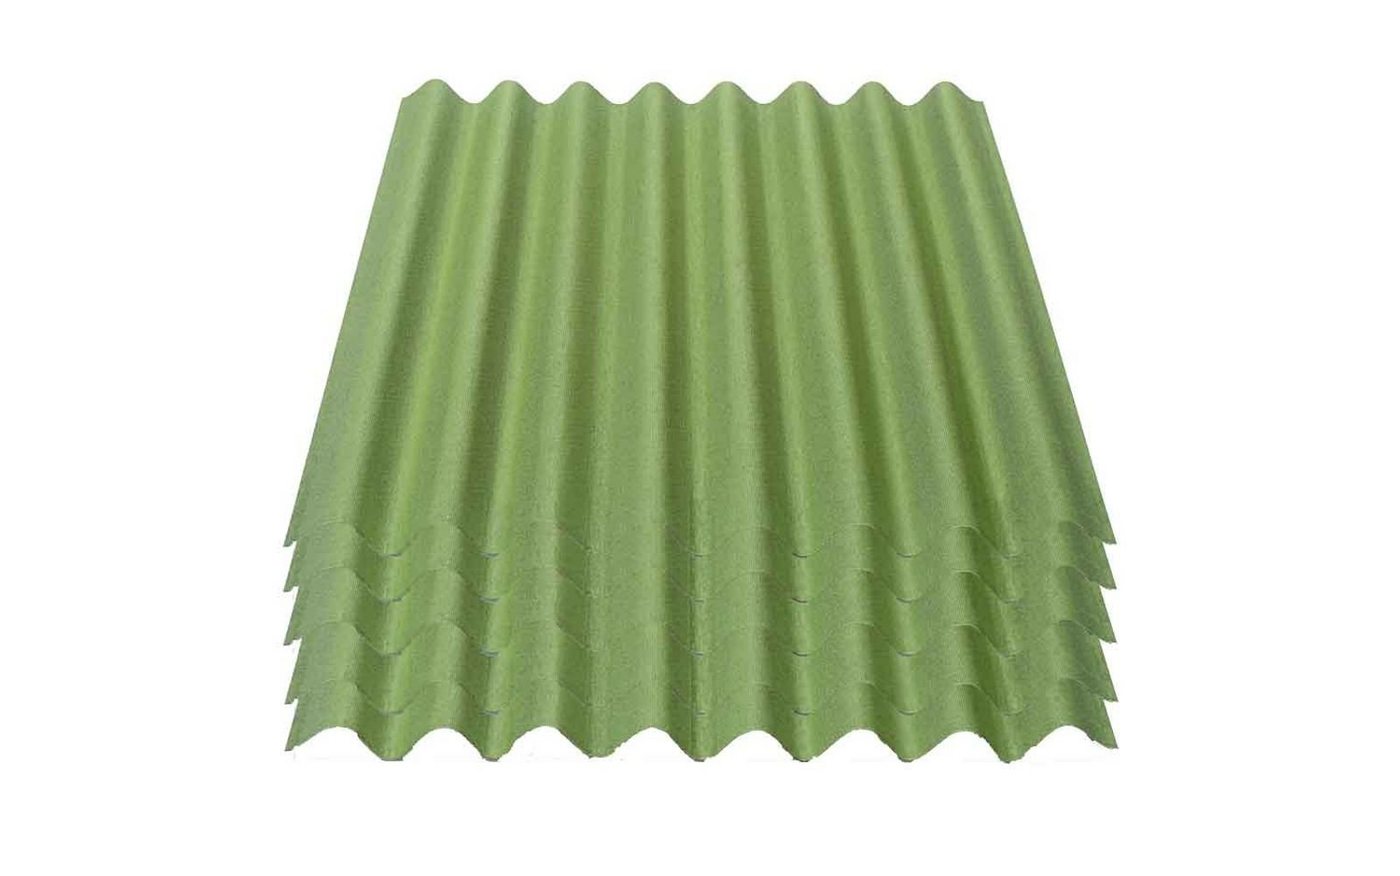 Onduline Dachpappe Onduline Easyline Dachplatte Wandplatte Bitumenwellplatten Wellplatte 5x0,76m² - grün, wellig, 3.8 m² pro Paket, (5-St) von Onduline